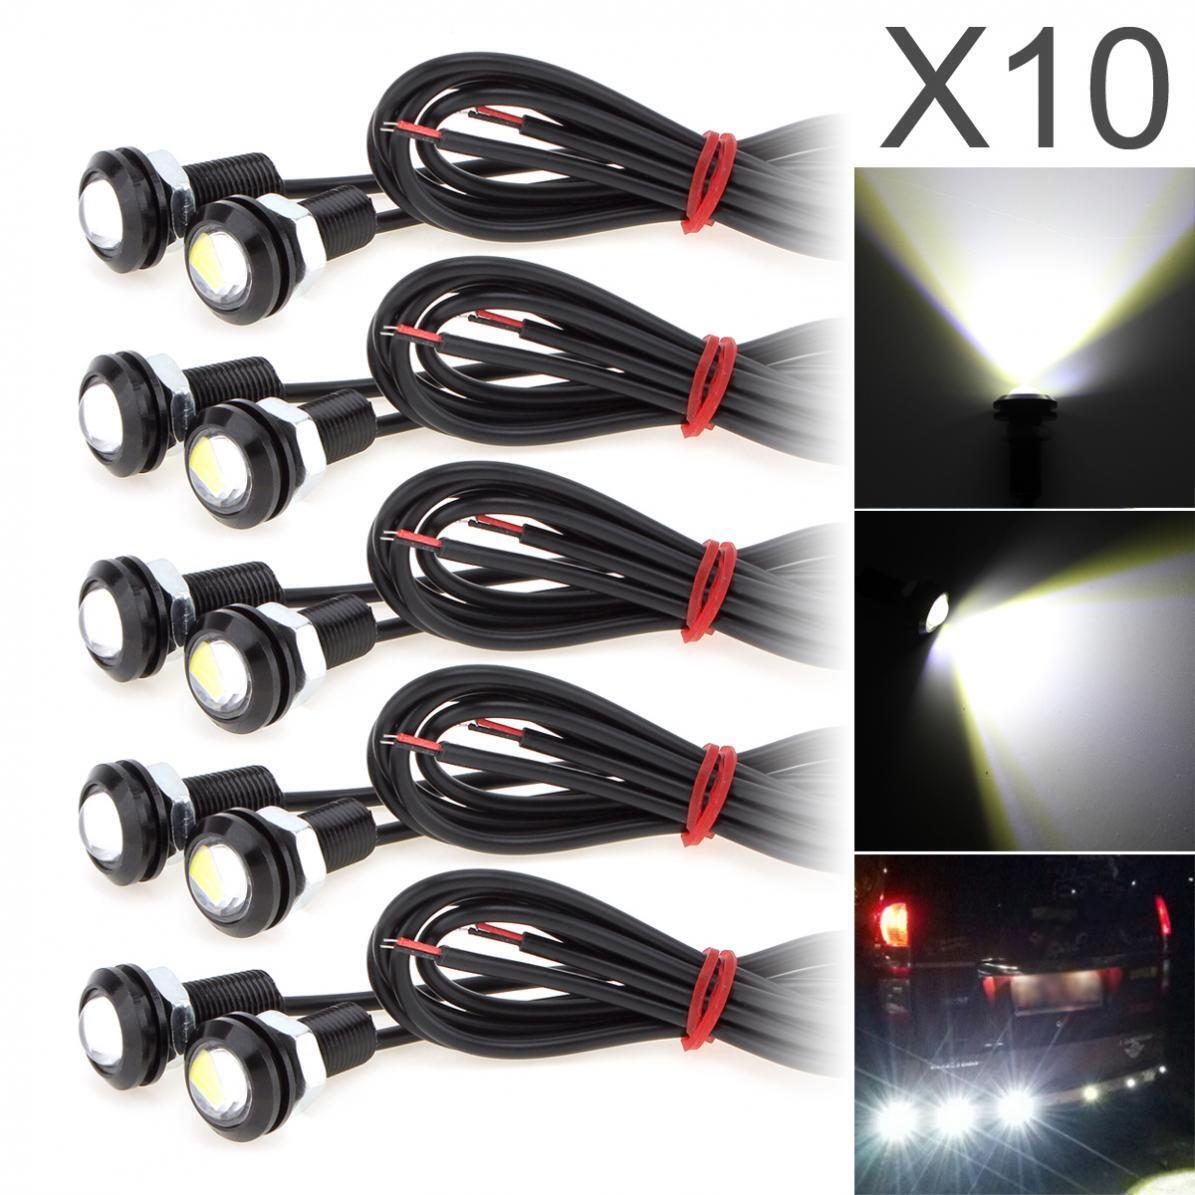 10x White Eagle Eye Lamps LED DRL Fog Daytime Running Car Light Tail Backup 12V